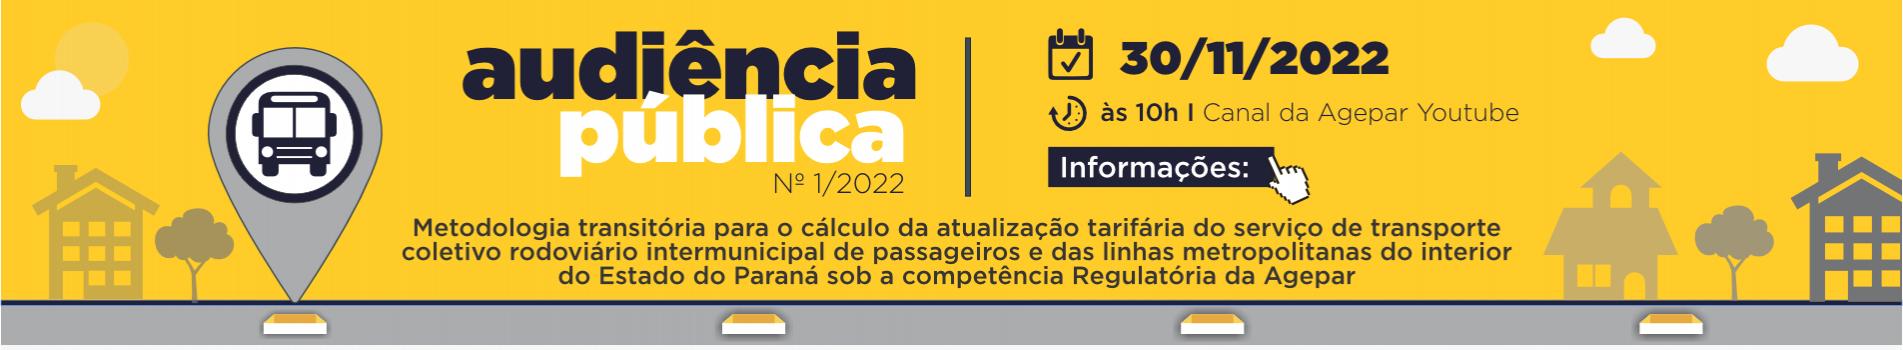 Audiência Pública 02/2022